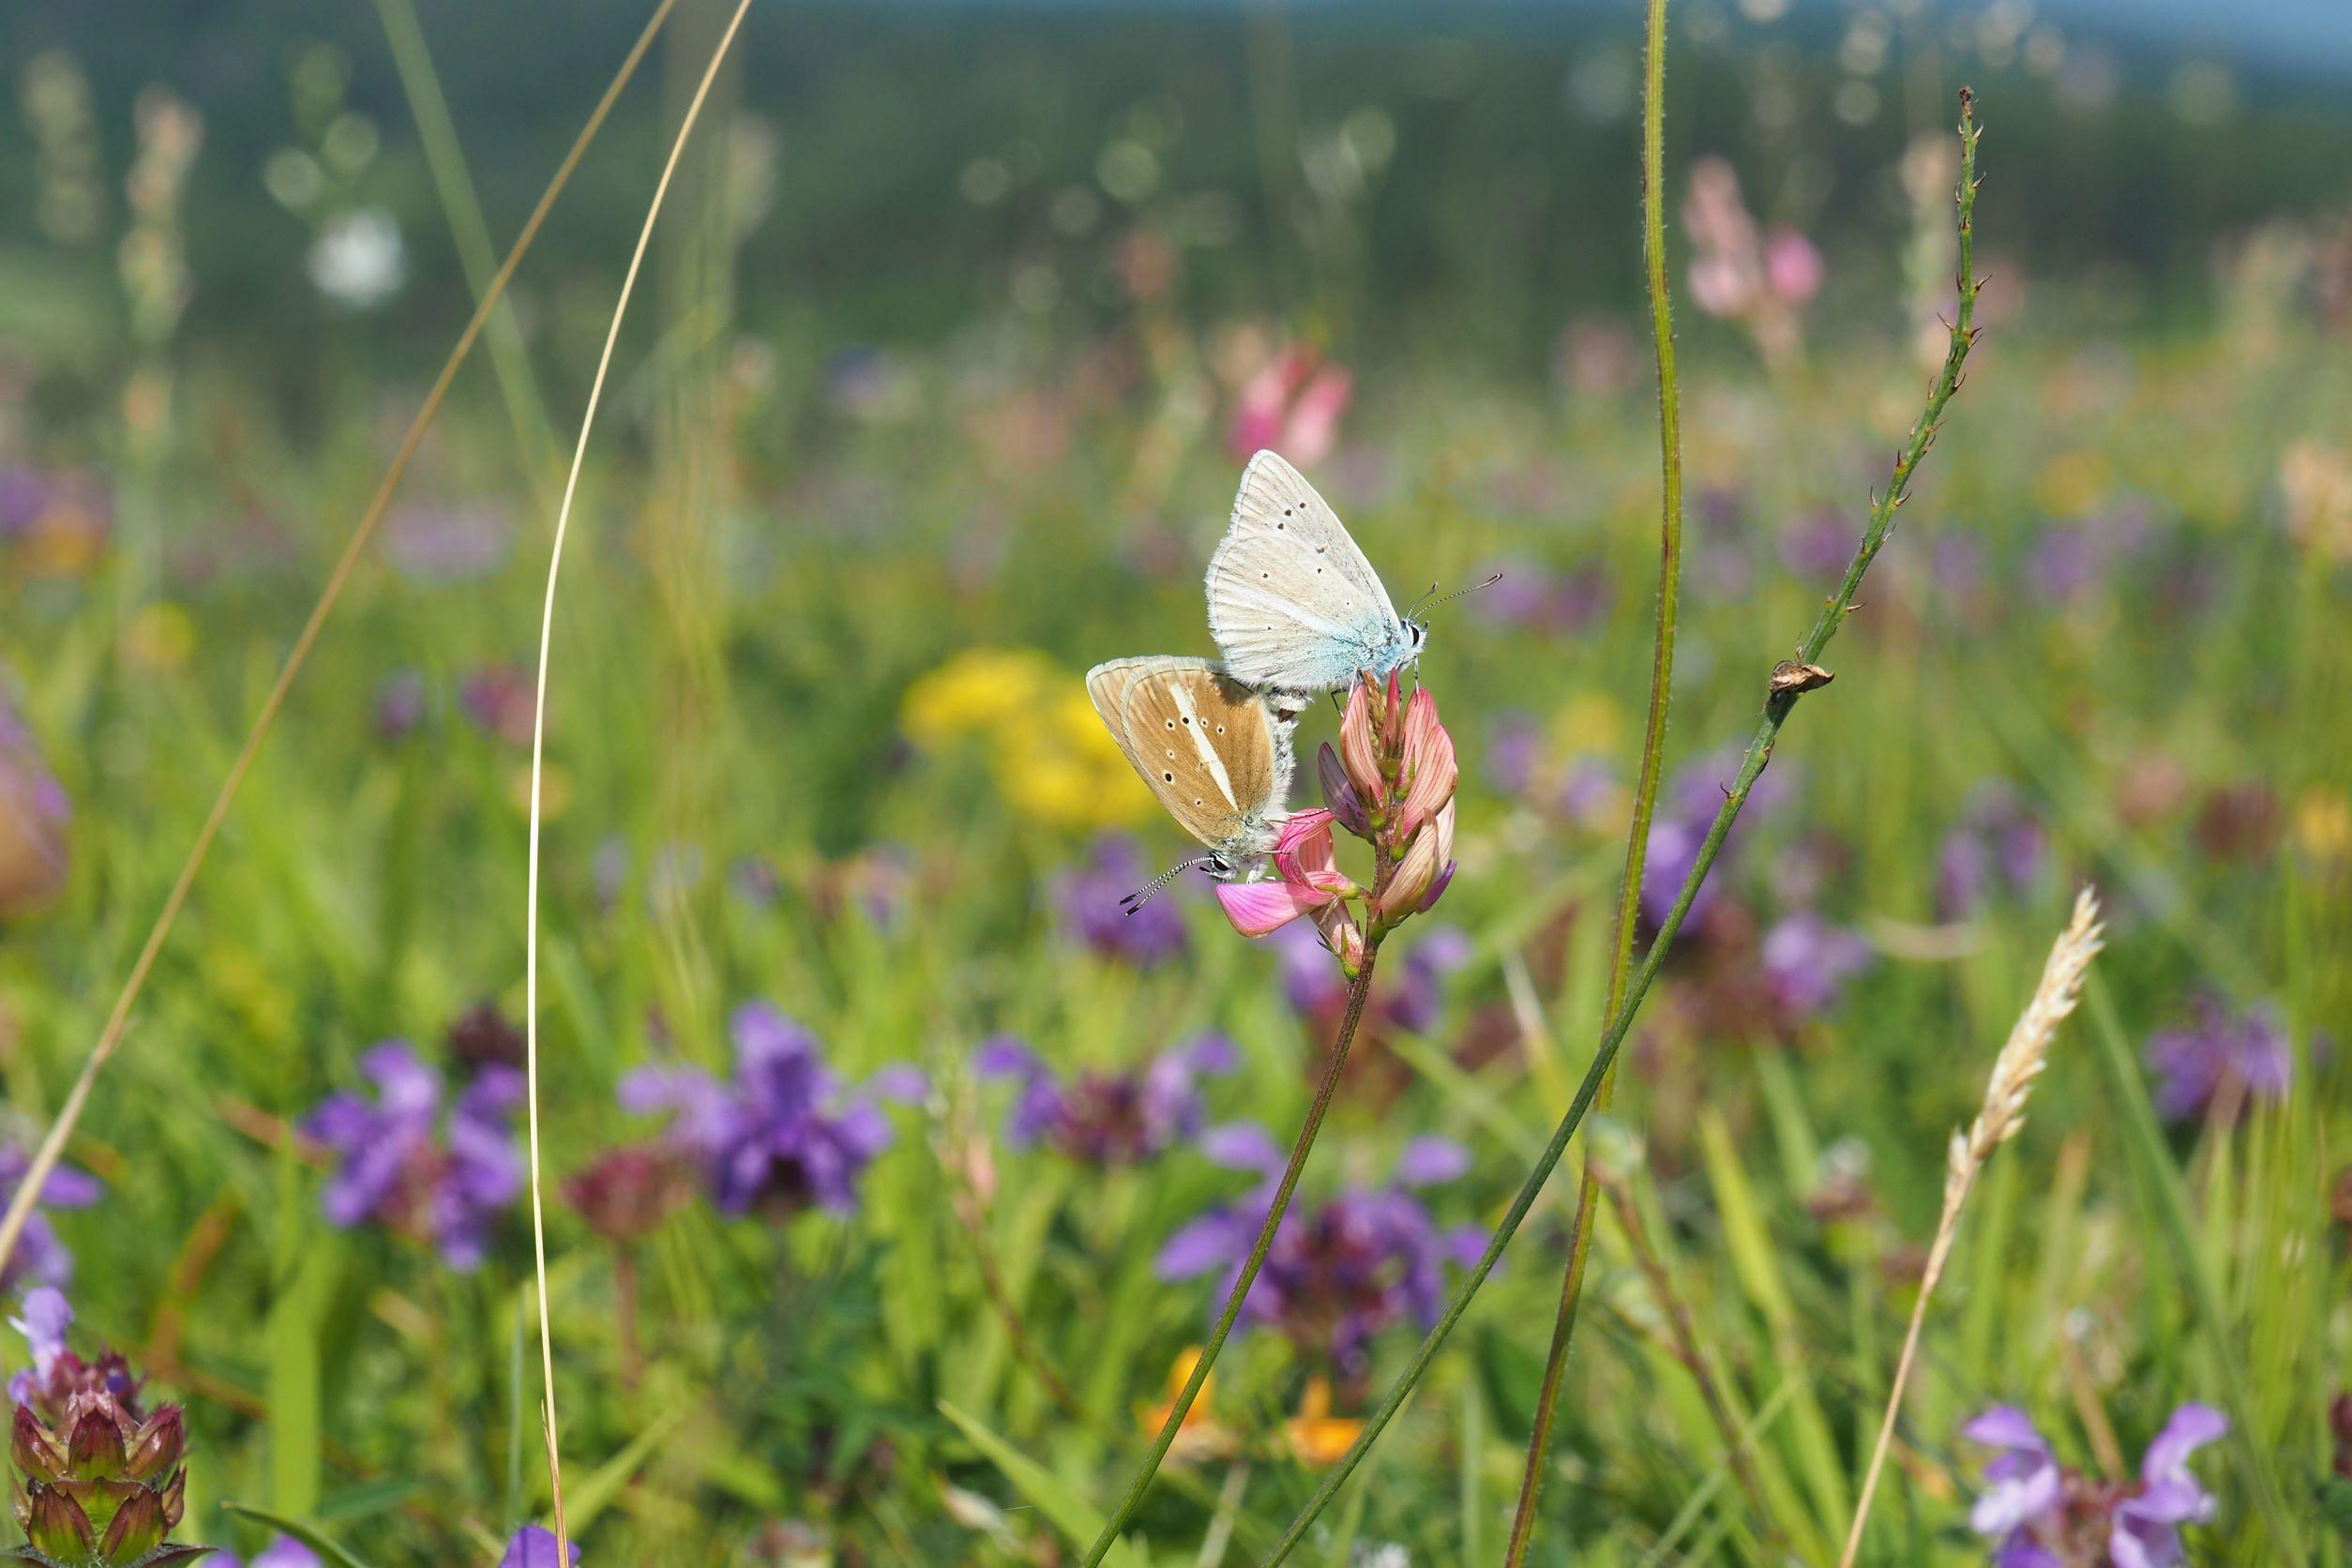 Die Artenvielfalt in den bayerischen Mittelgebirgen befindet sich im Wandel. In der Online-Vortragsreihe des Biodiversitätszentrum Rhön geben Expertinnen und Experten Einblicke in aktuelle Forschung.